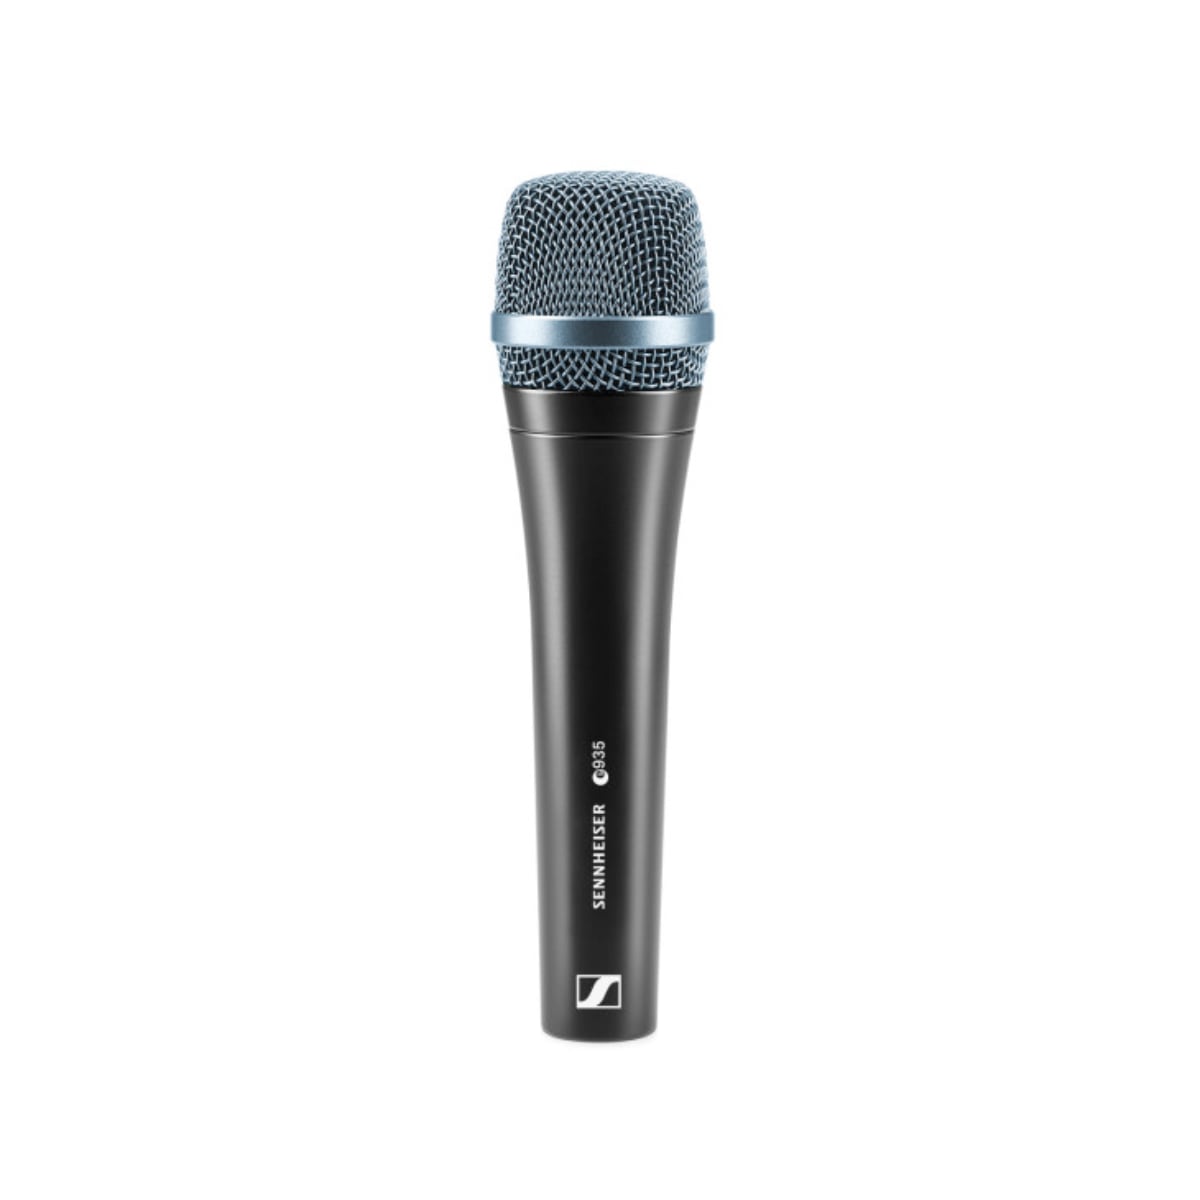 Sennheiser e 935 Vocal Dynamic Microphone